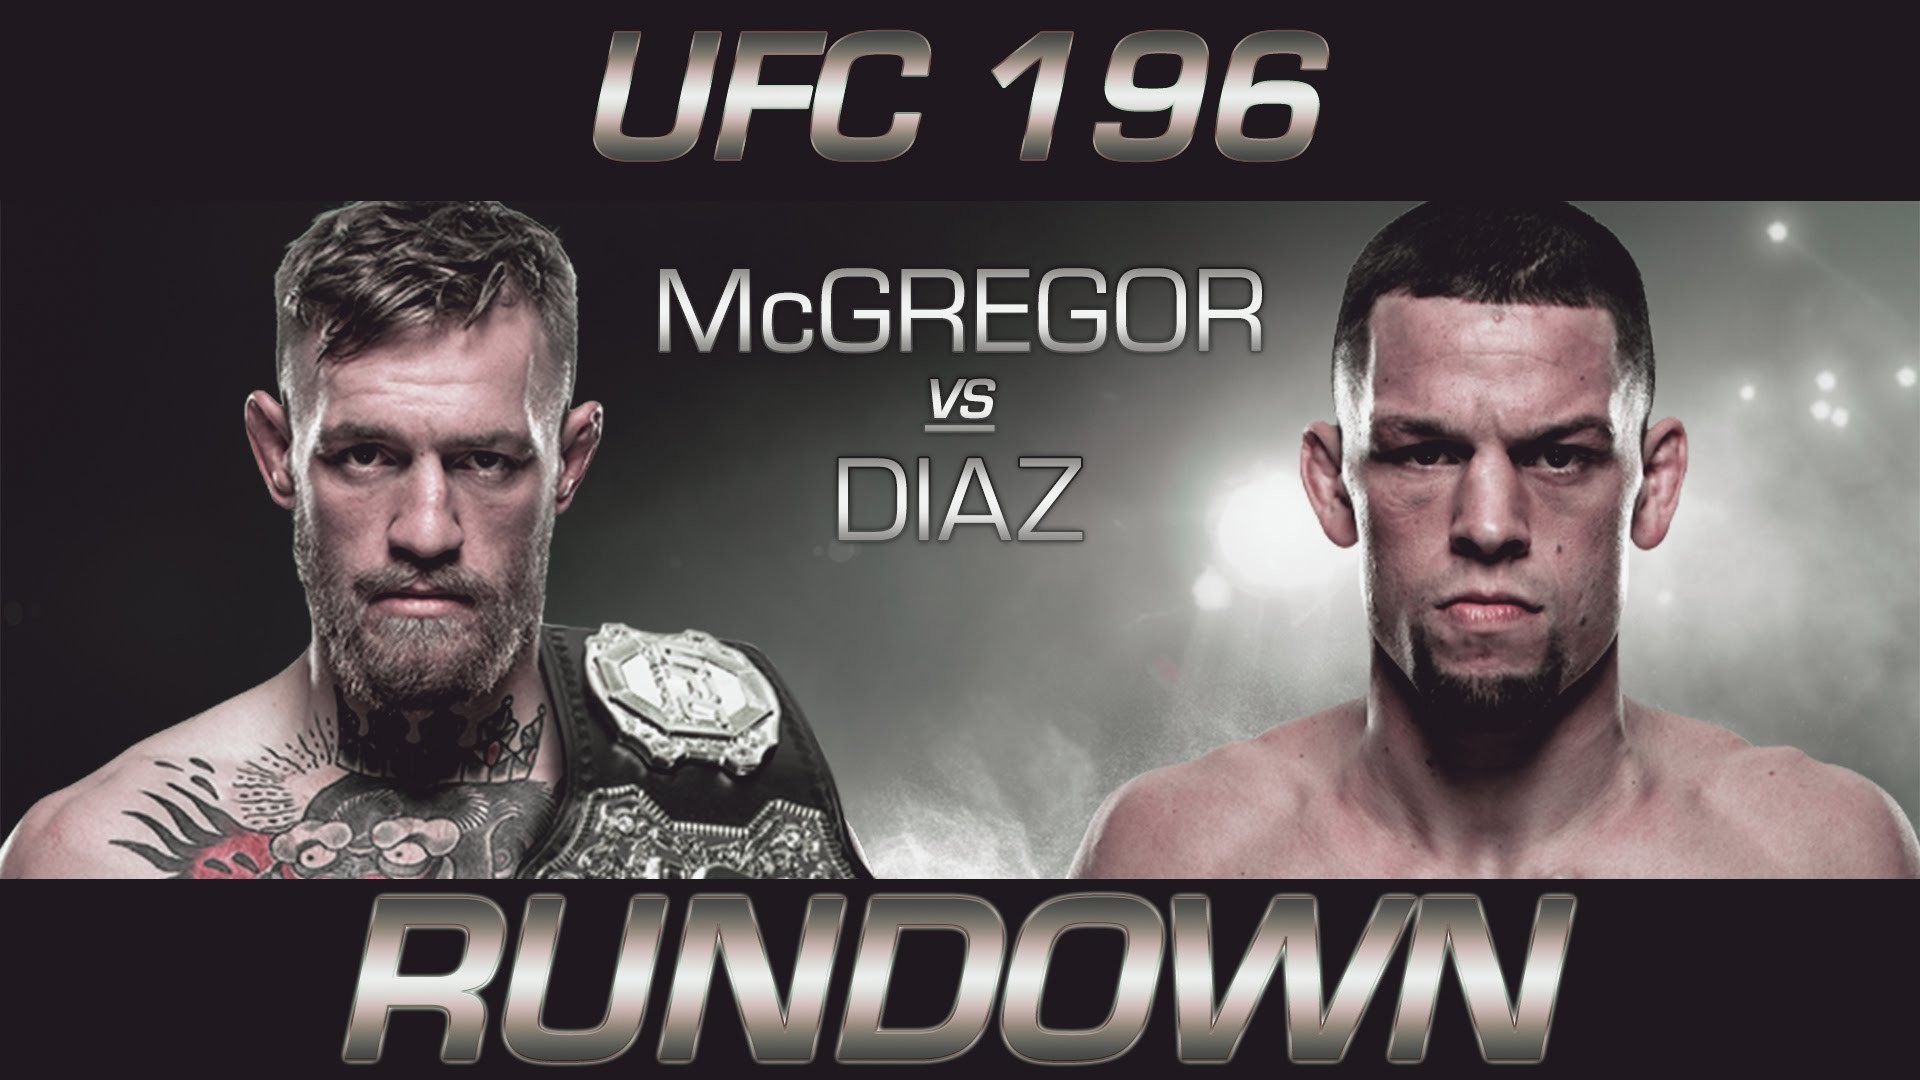 1920x1080 RUNDOWN - Conor McGregor vs Nate Diaz #UFC196